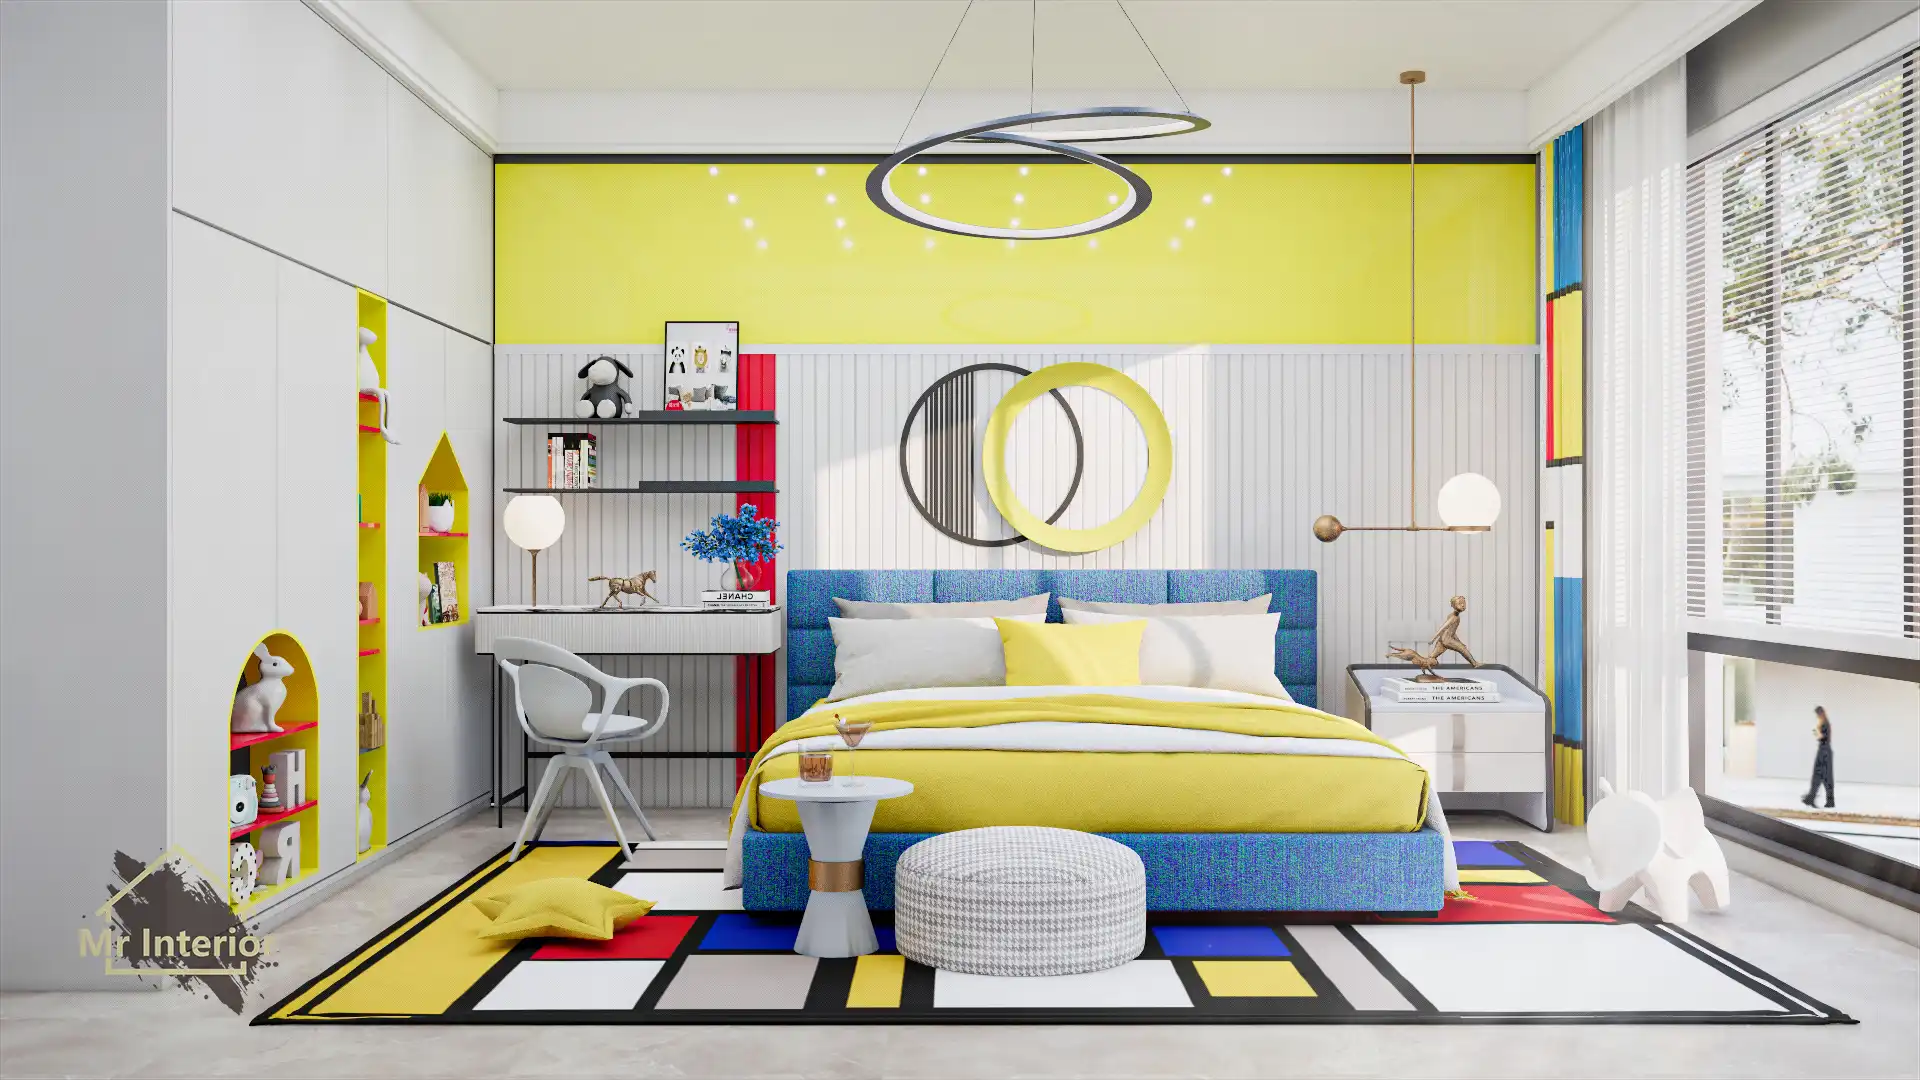 風格派設計風格房間，白色主調，紅色黃色藍色點綴。雙人床，書枱，衣櫃。Mr Interior室內設計、裝修、傢俬風格。